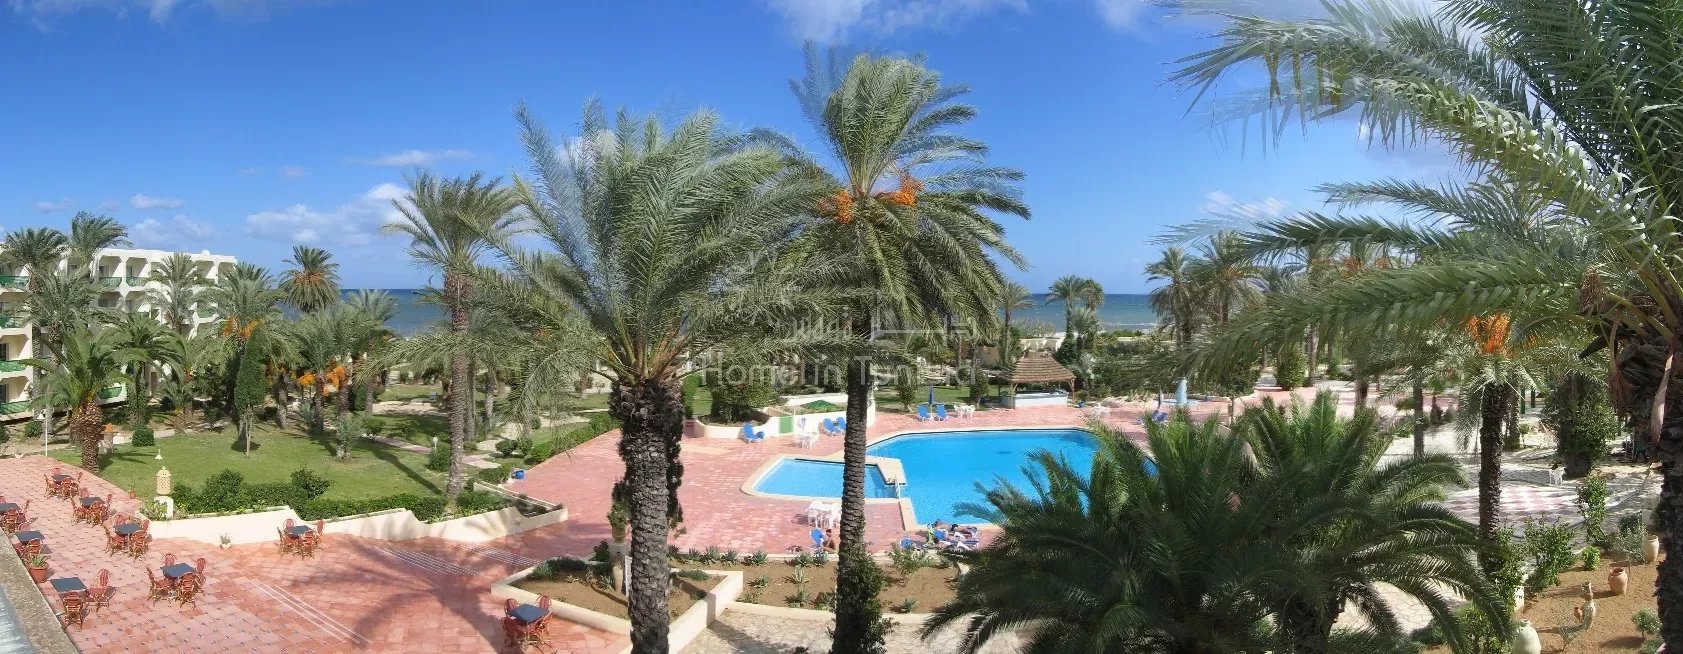 Hotel village touristique dans le coeur de la zone touristique de Sousse